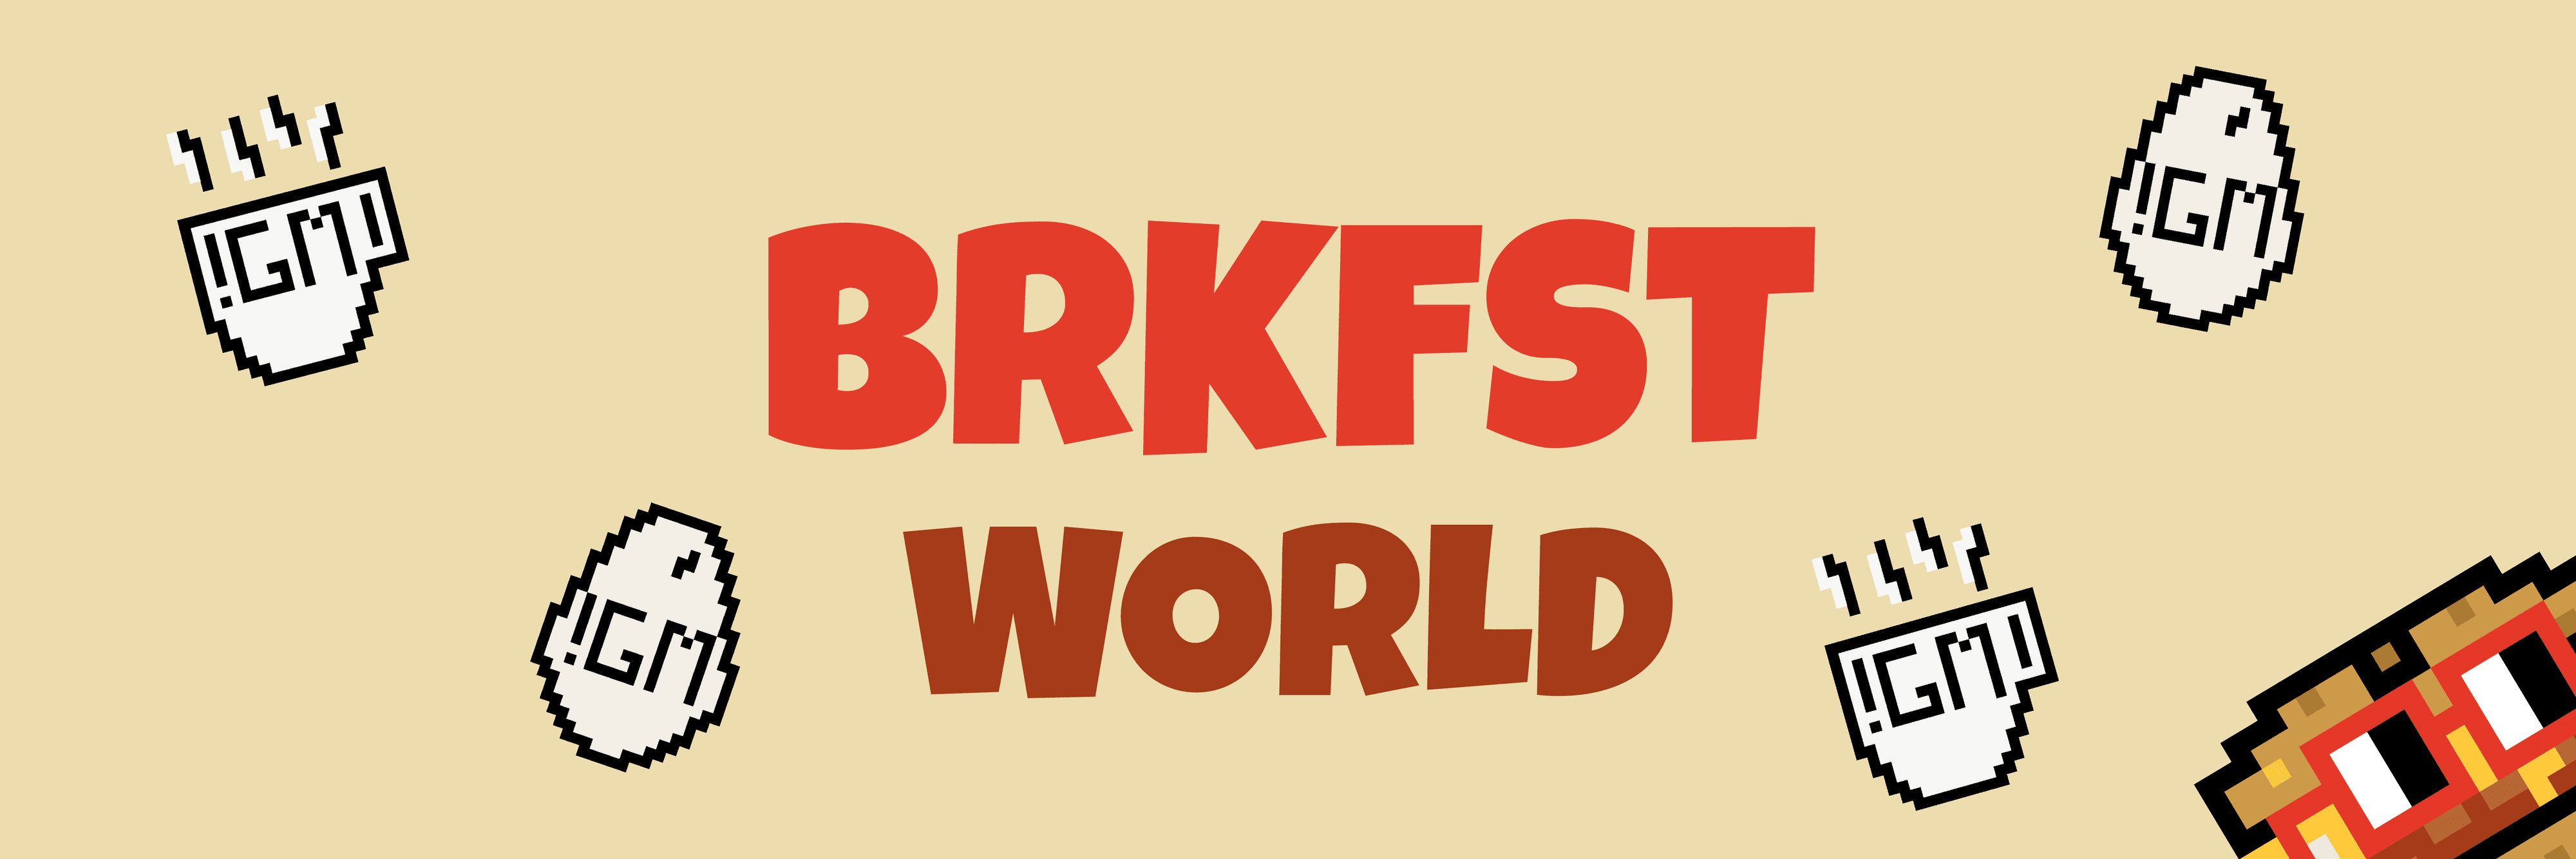 brkfstsndwch banner